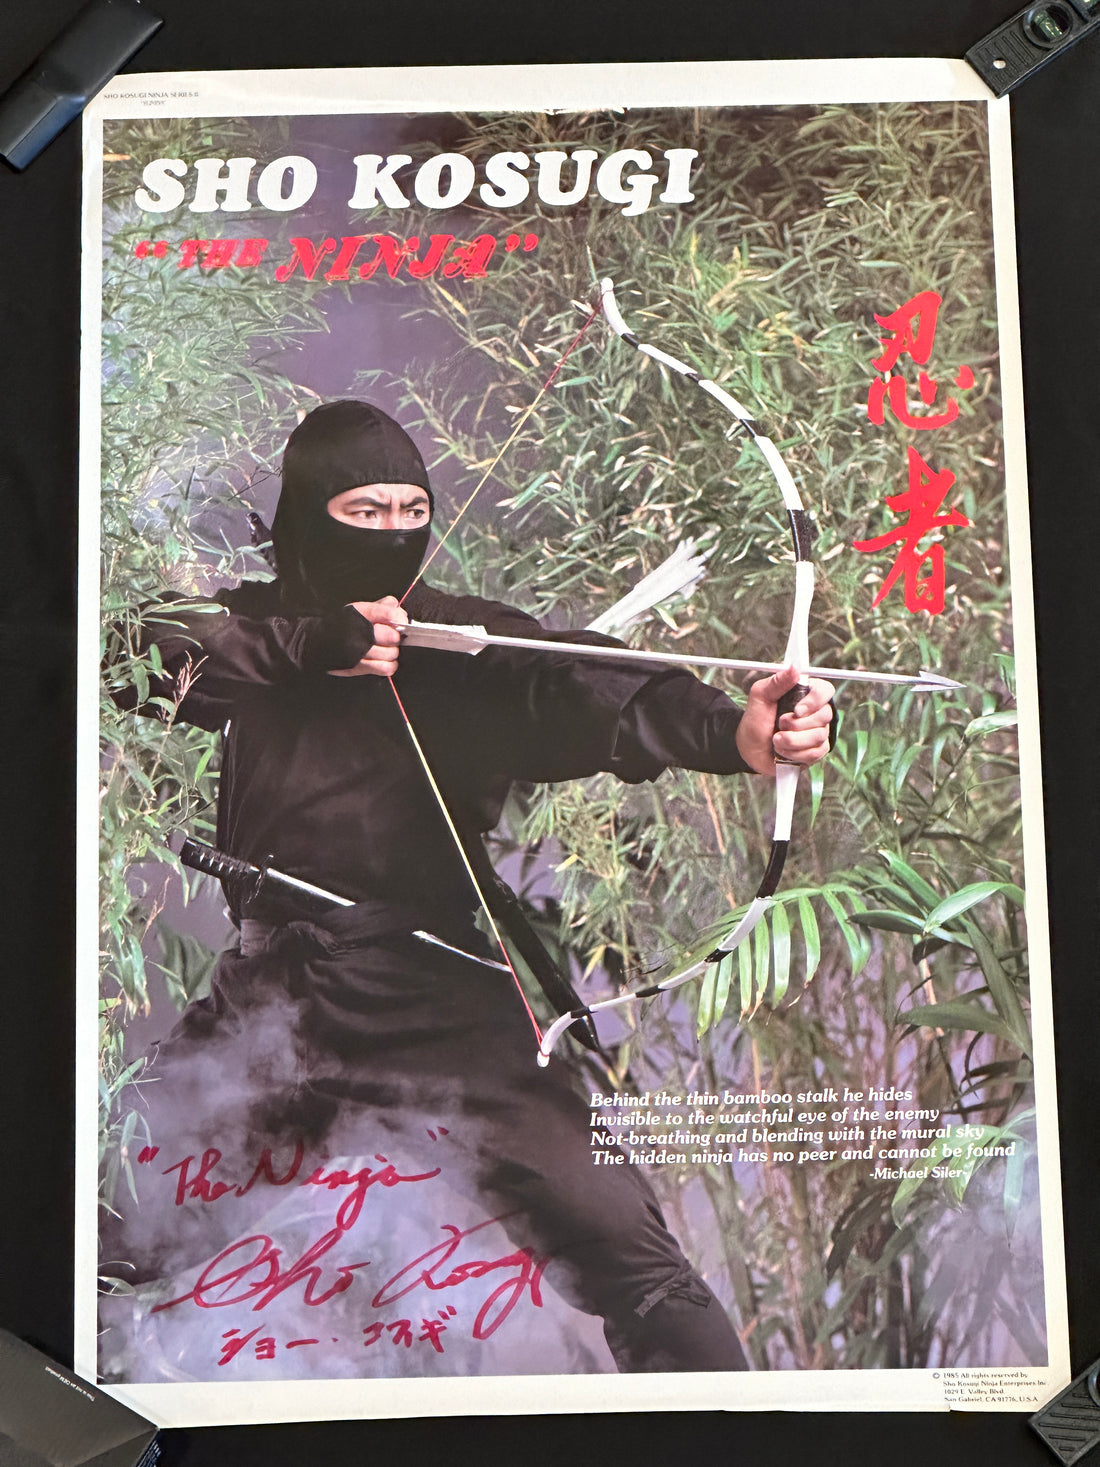 Sho Kosugi Autographed "Yumiya" poster.